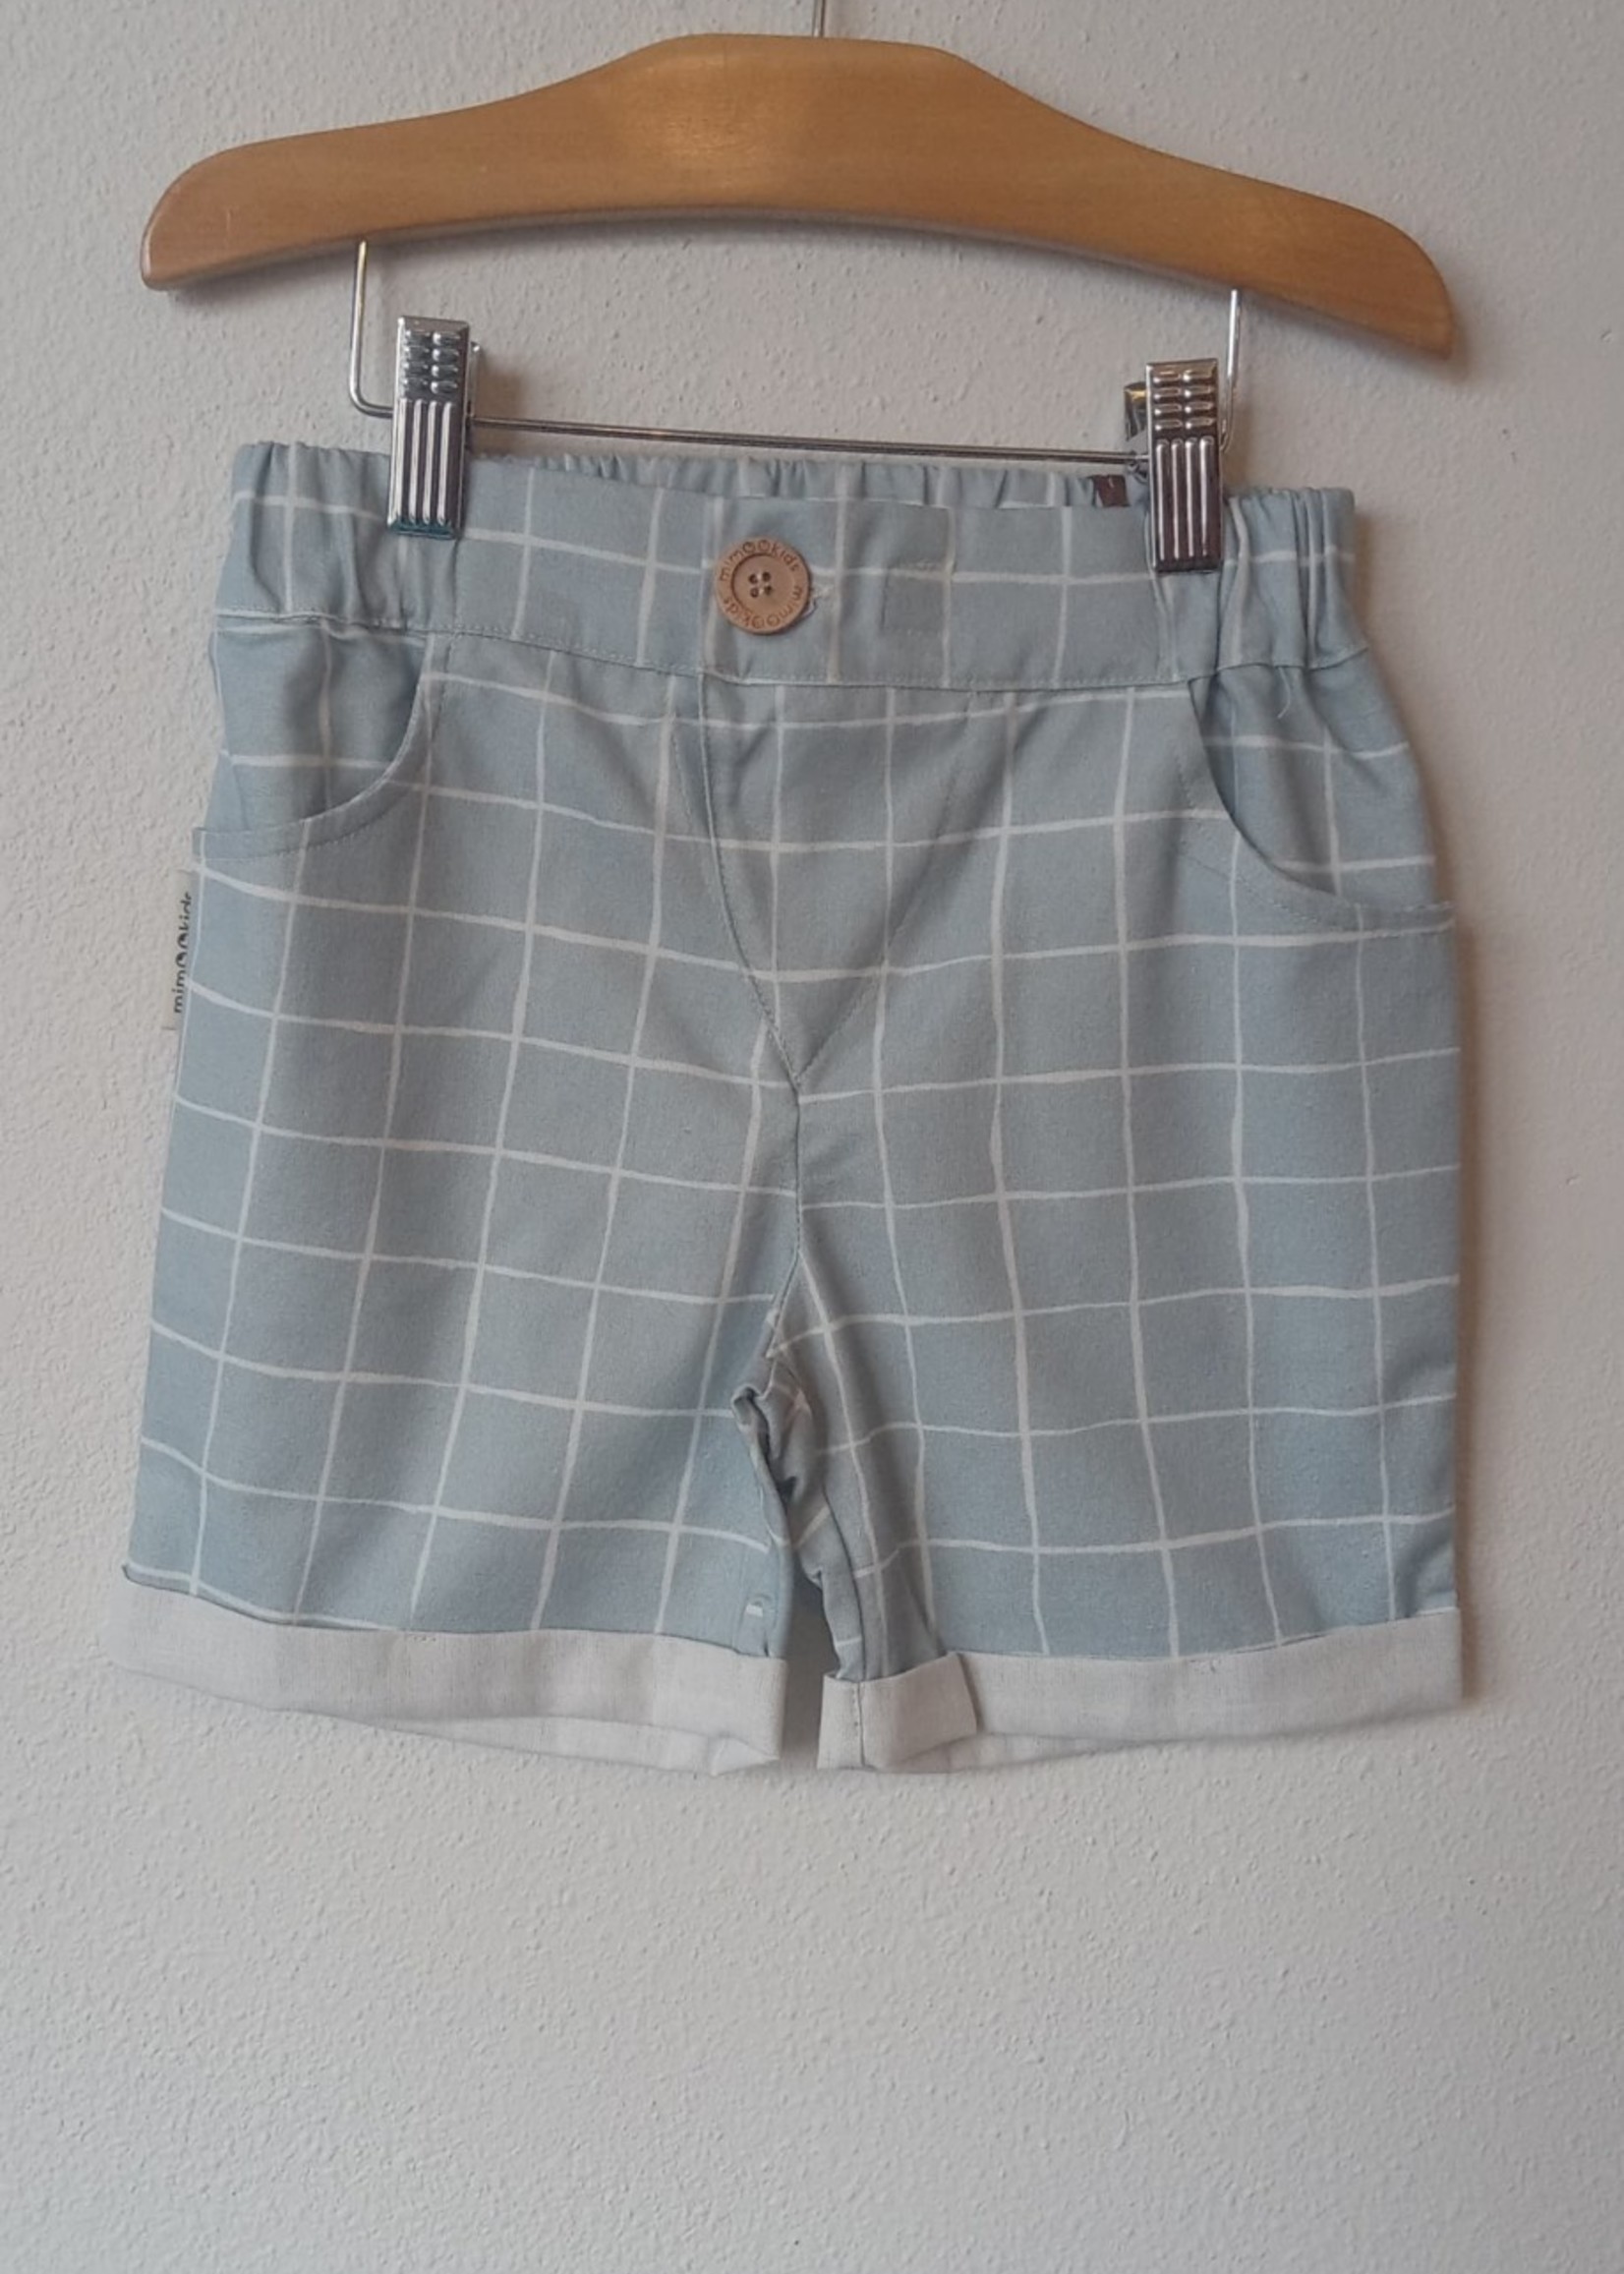 Mimoo Grey Shorts